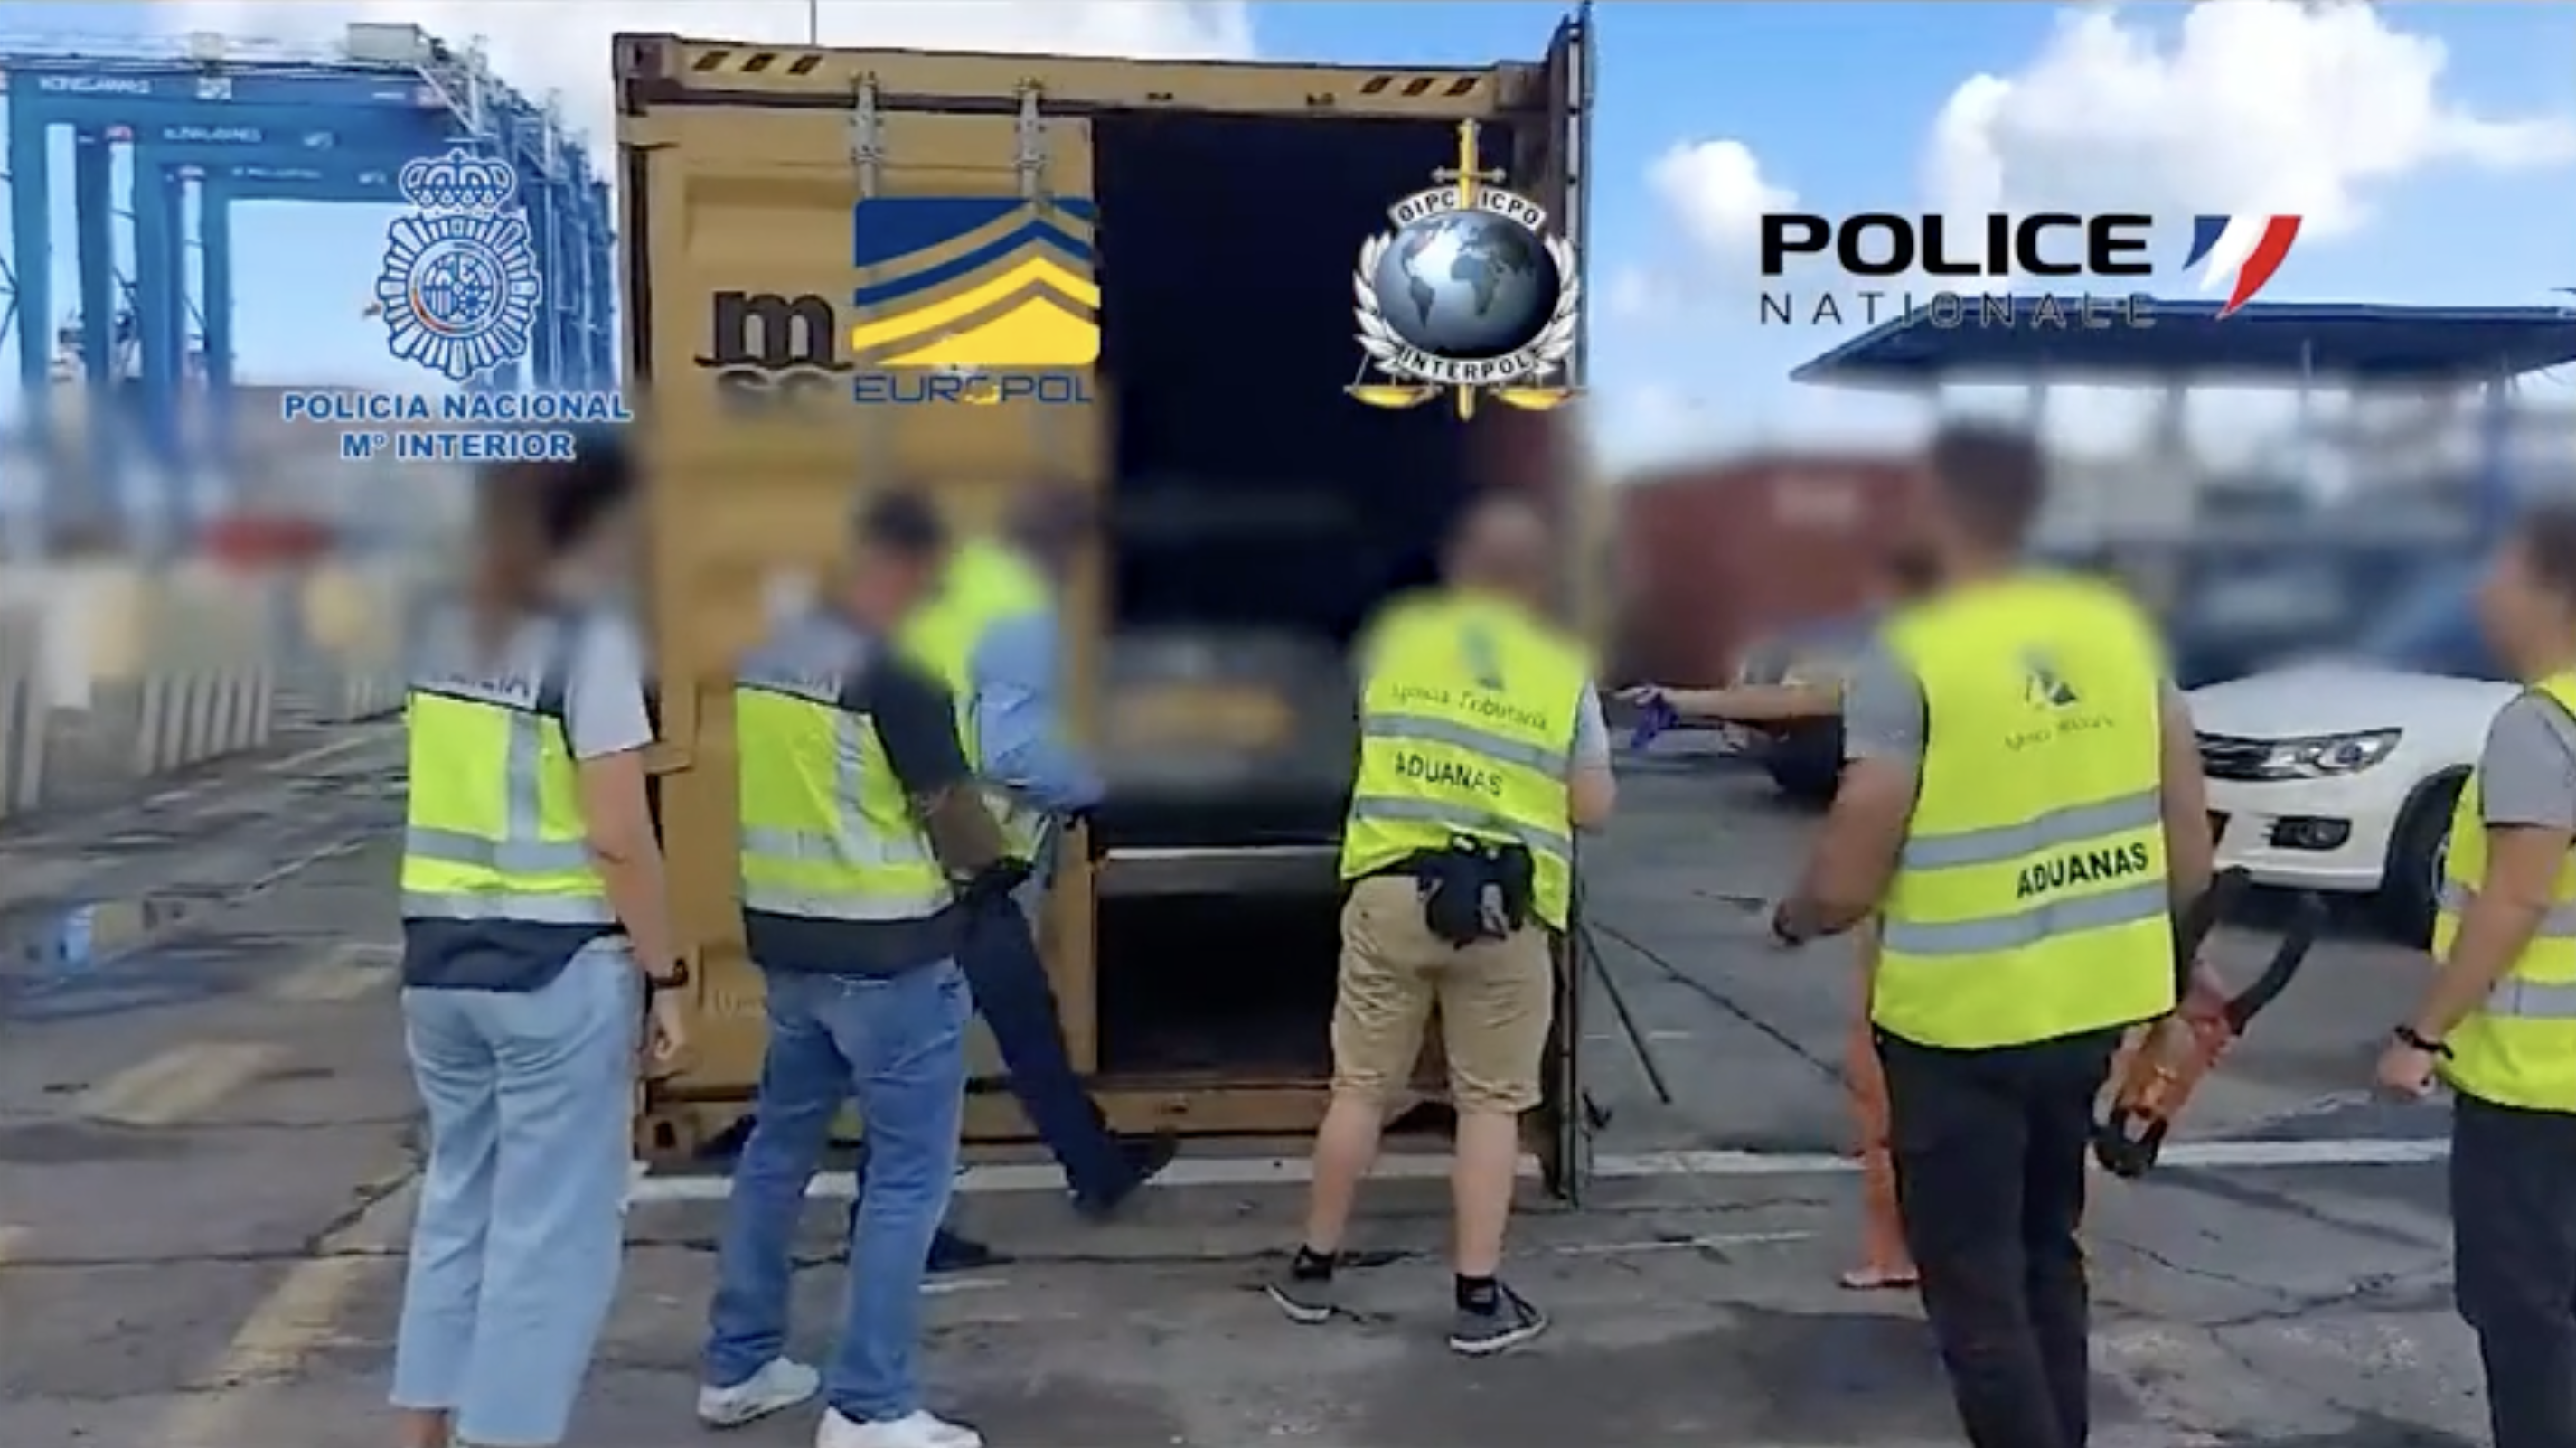 La Policía halla tres coches robados en el Puerto de Algeciras tras desarticular una red de tráfico ilícito de vehículos